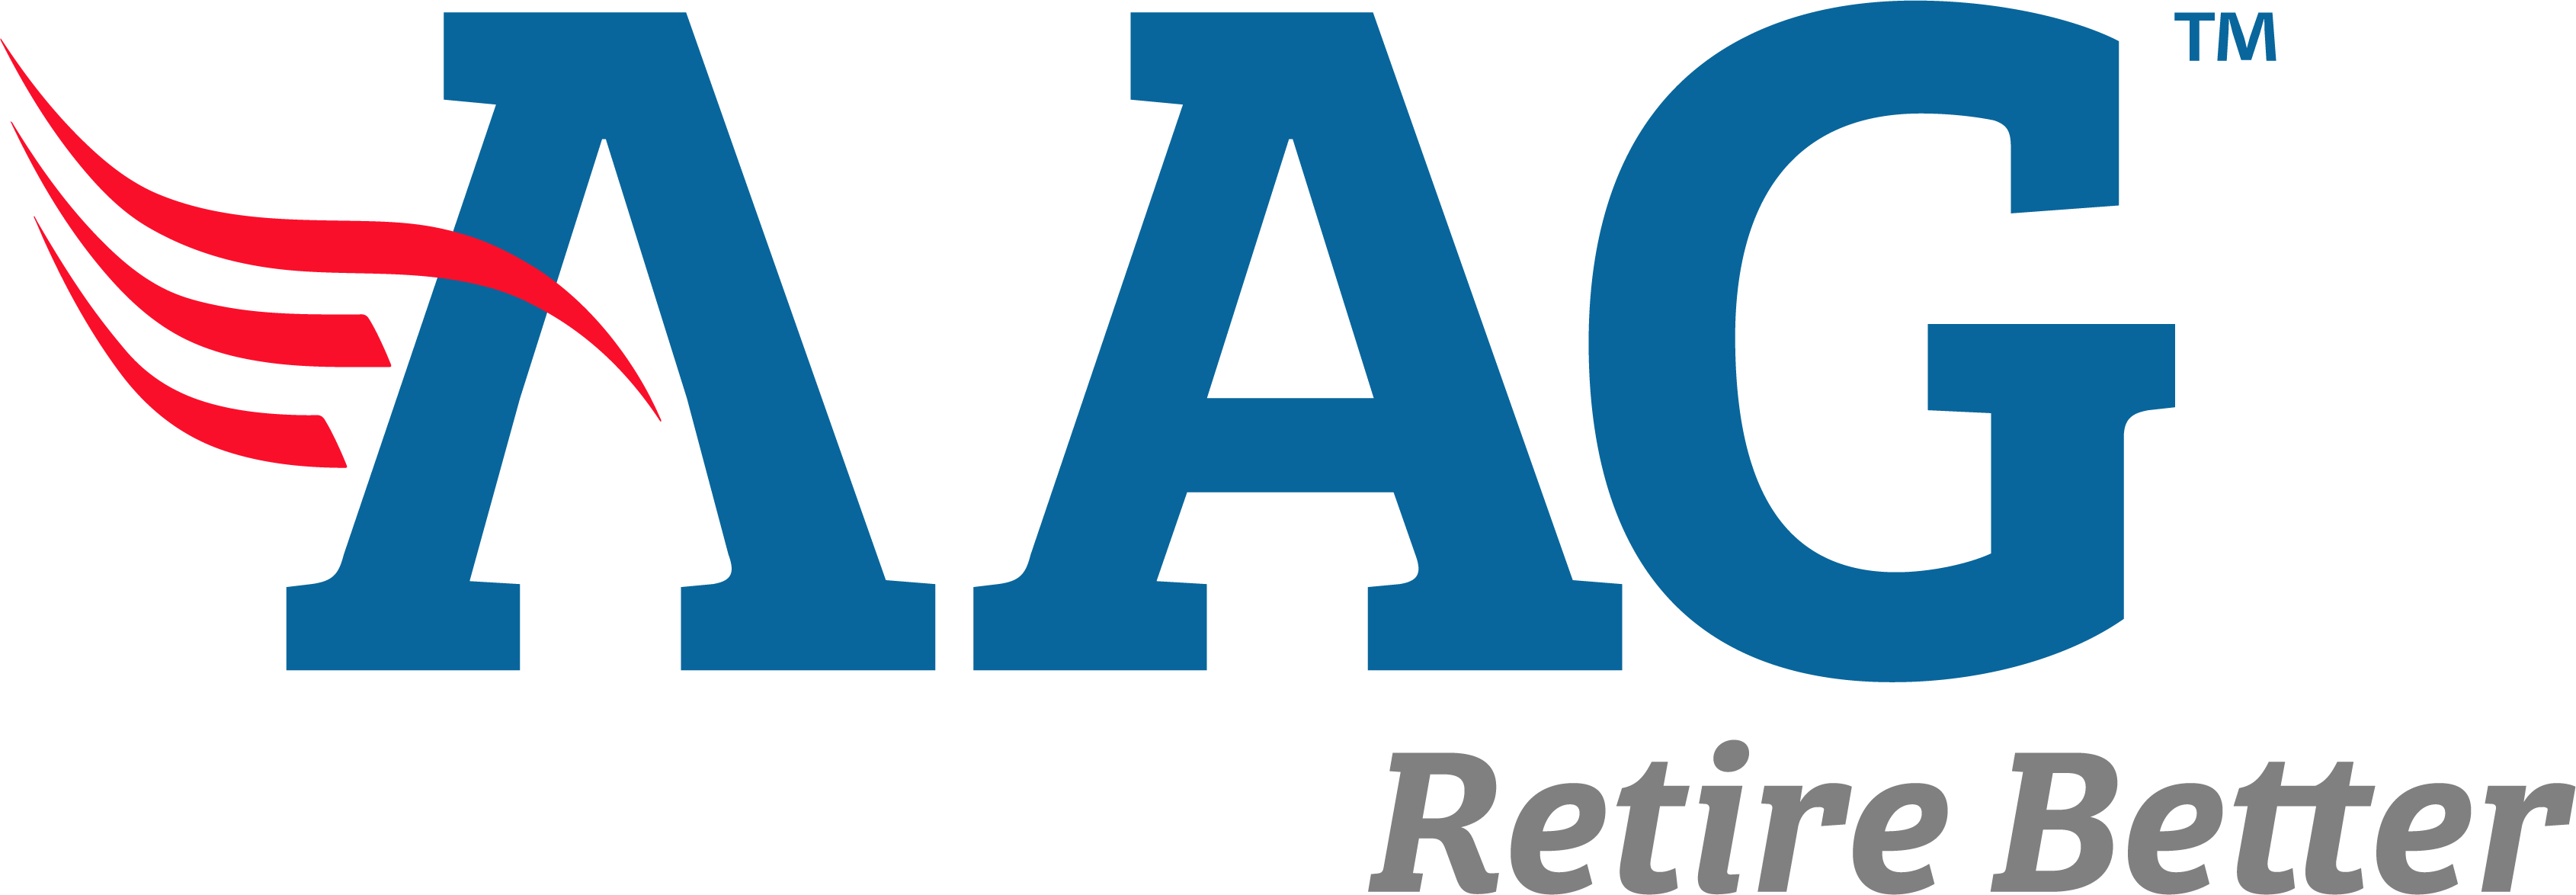 AAG Logo